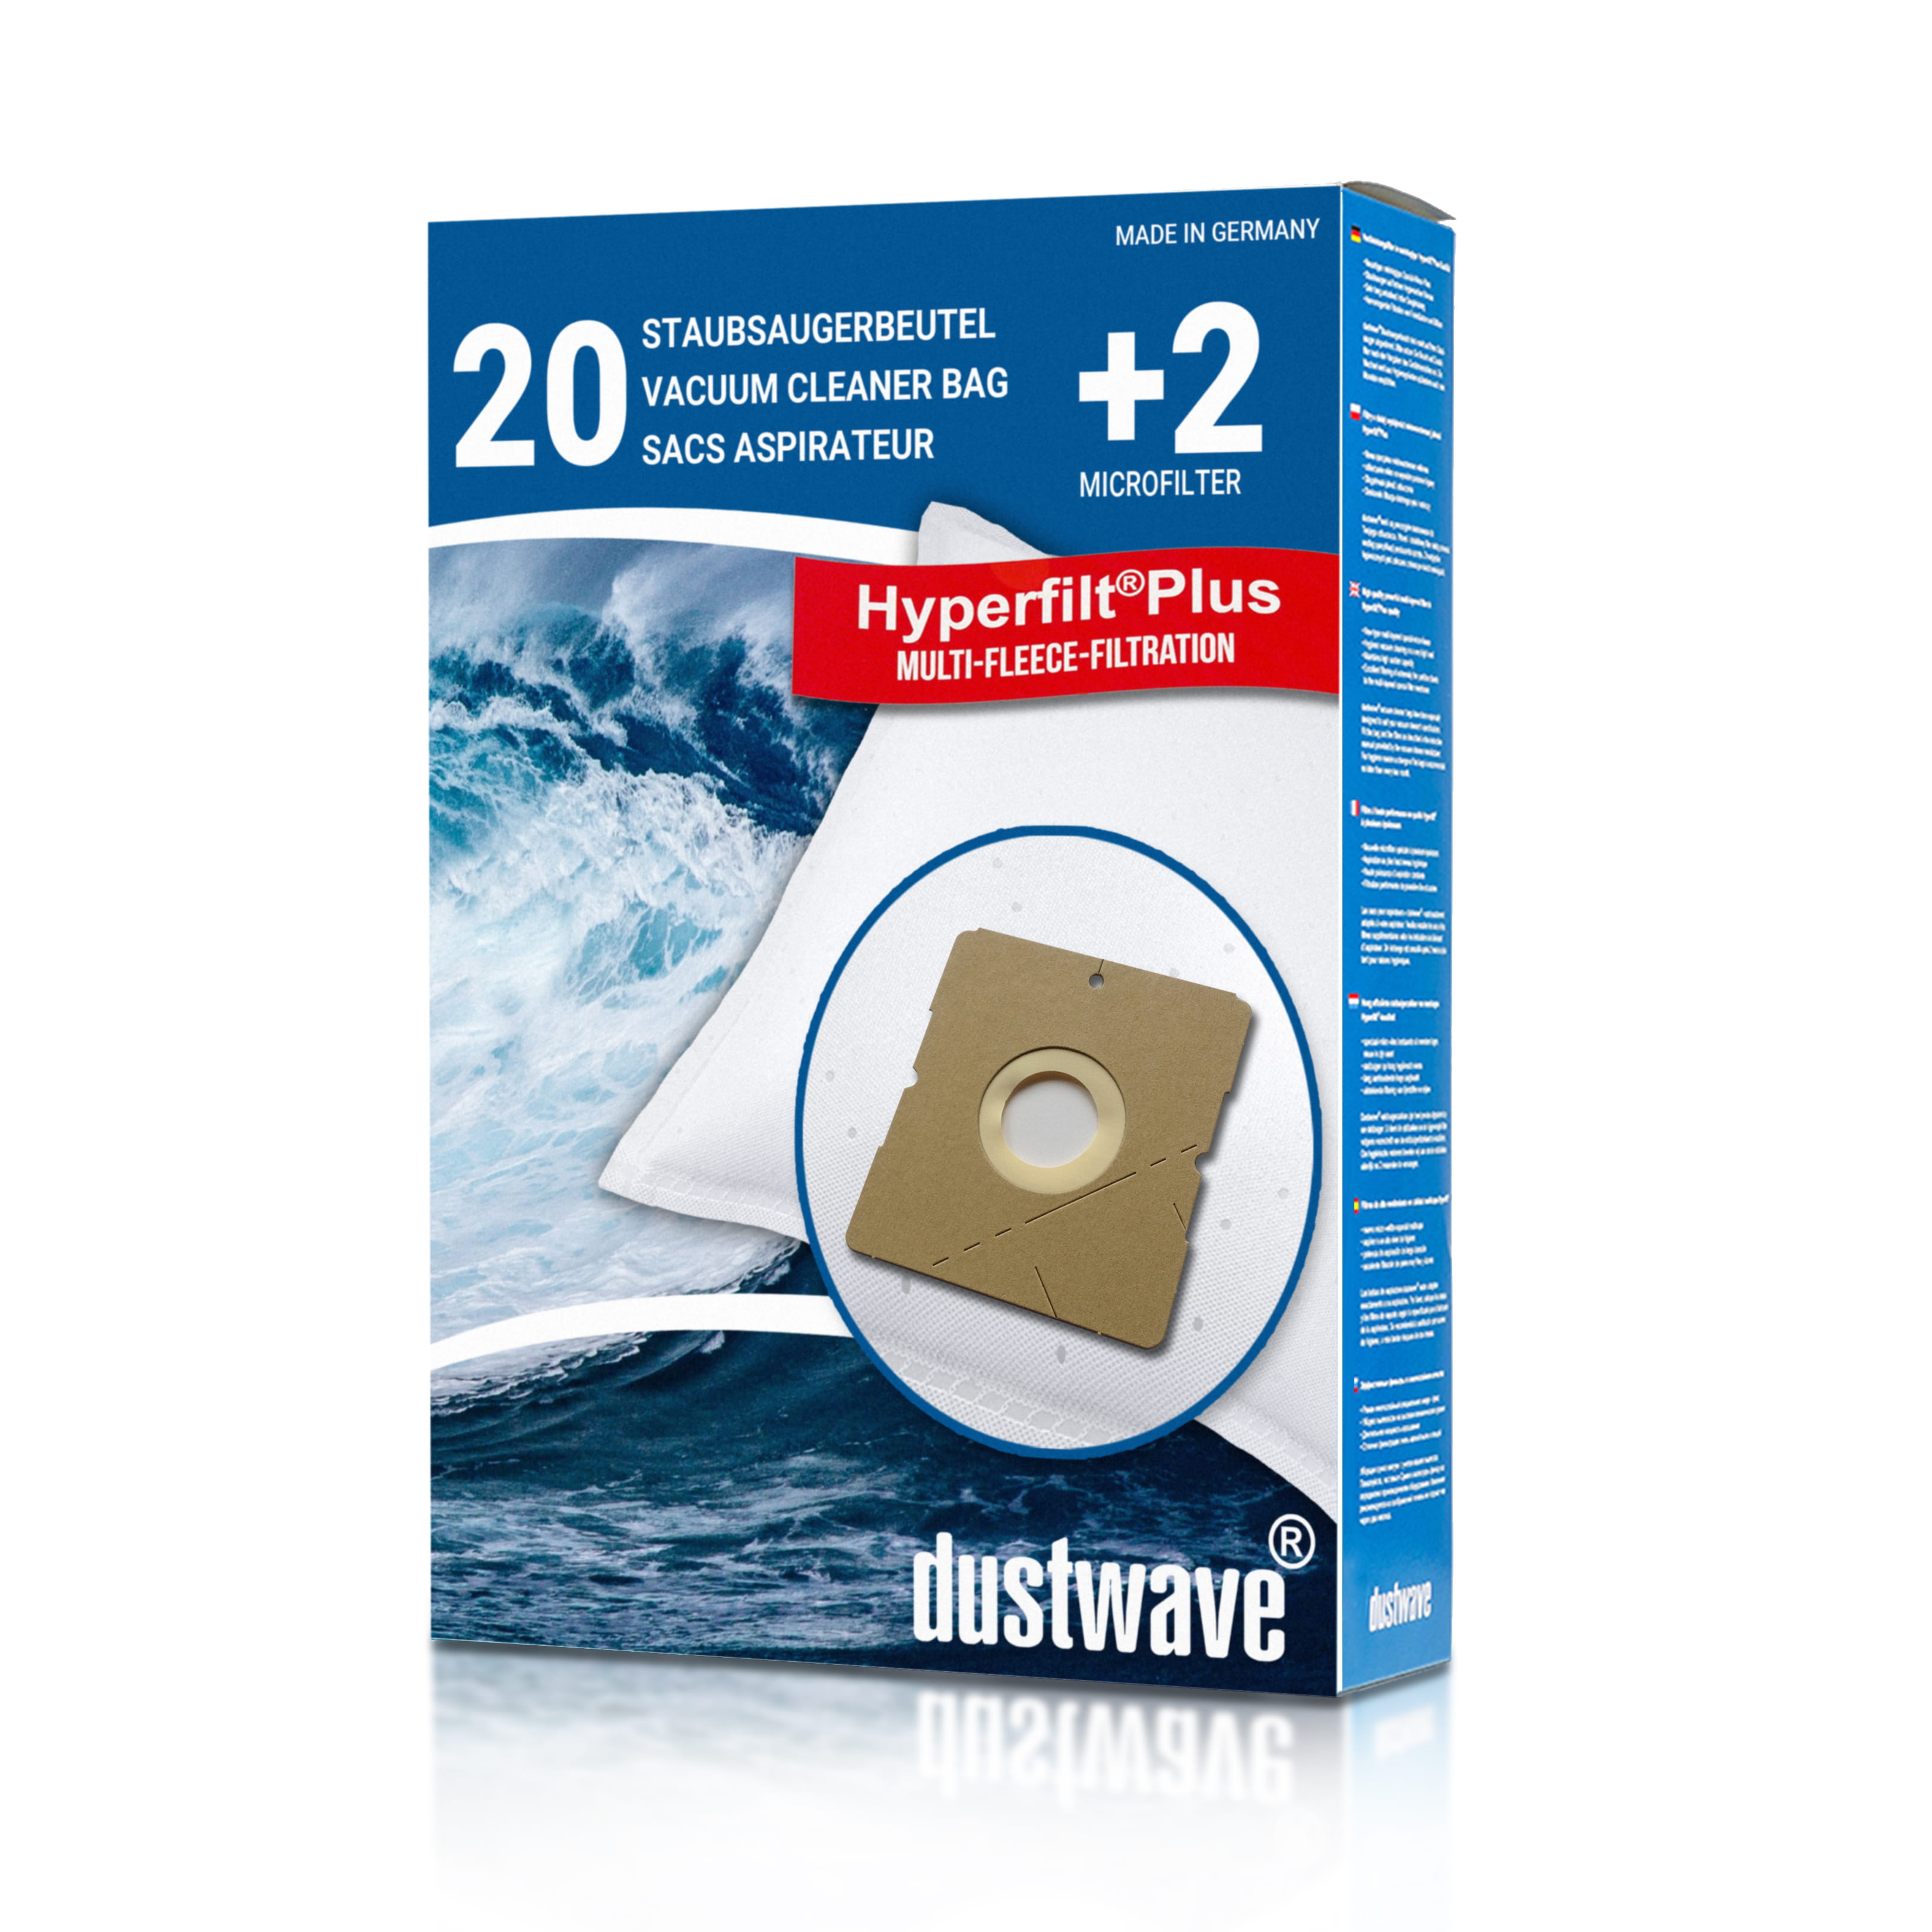 Dustwave® 20 Staubsaugerbeutel für Hoover TDC2000 011 - hocheffizient, mehrlagiges Mikrovlies mit Hygieneverschluss - Made in Germany